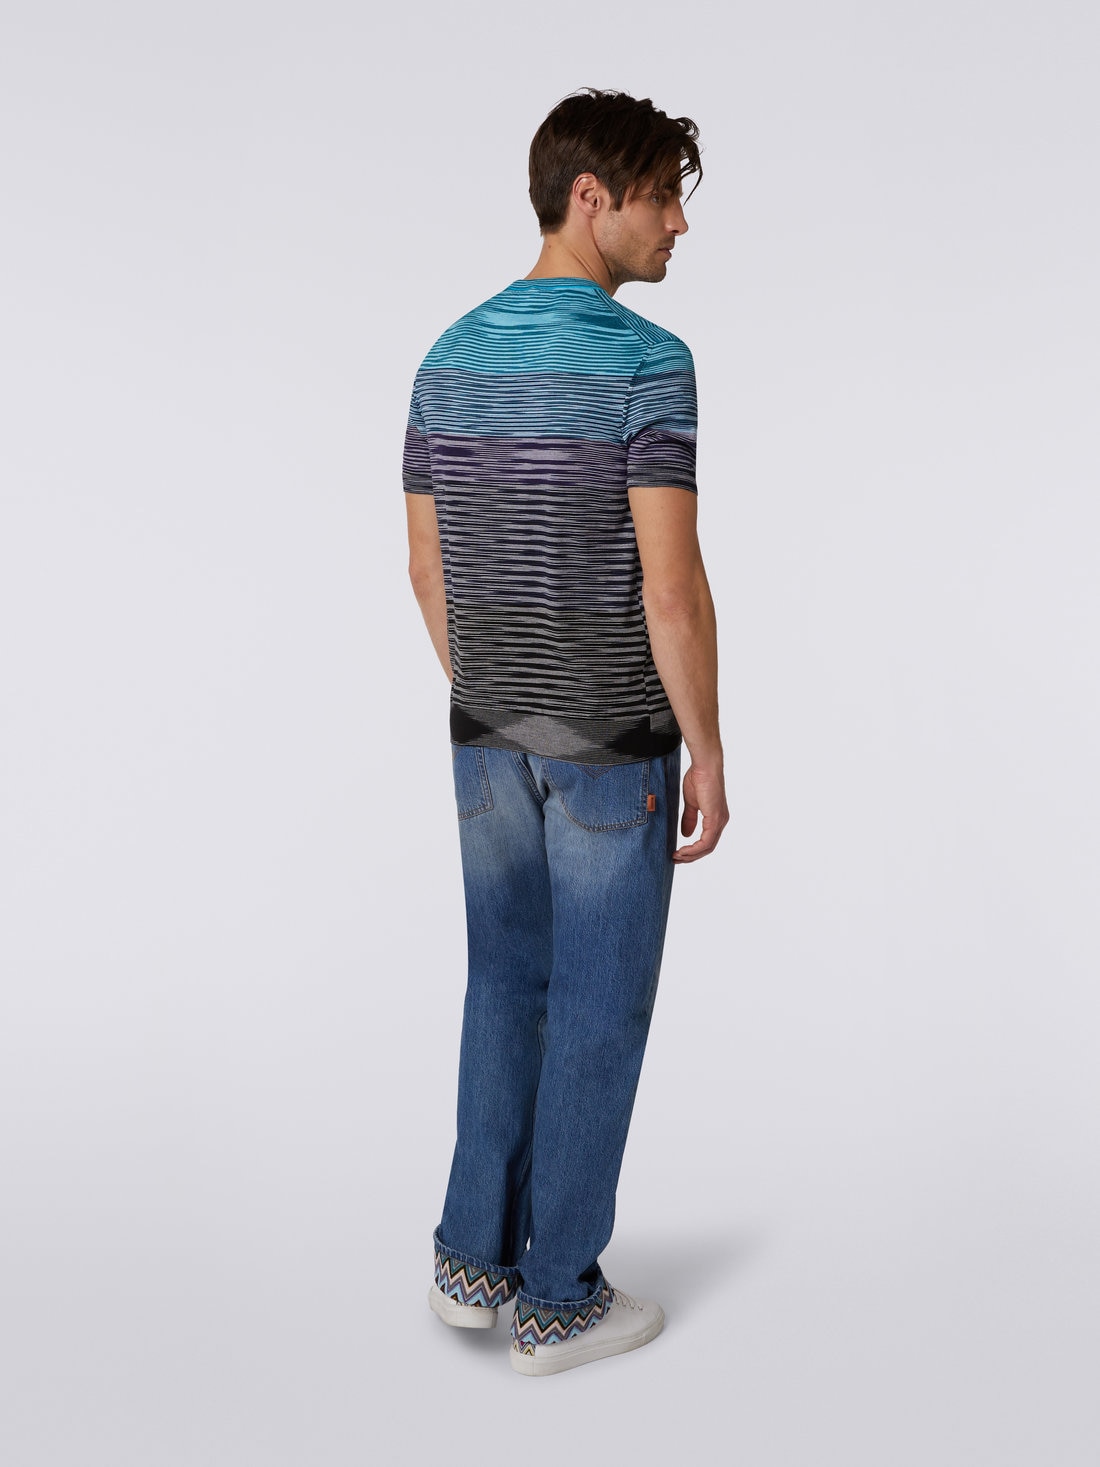 Kurzärmeliges T-Shirt aus Baumwollstrick mit Rundhalsausschnitt und Dégradé-Streifen, Blau, Violett & Schwarz - US23SL1CBK012QS91DS - 3